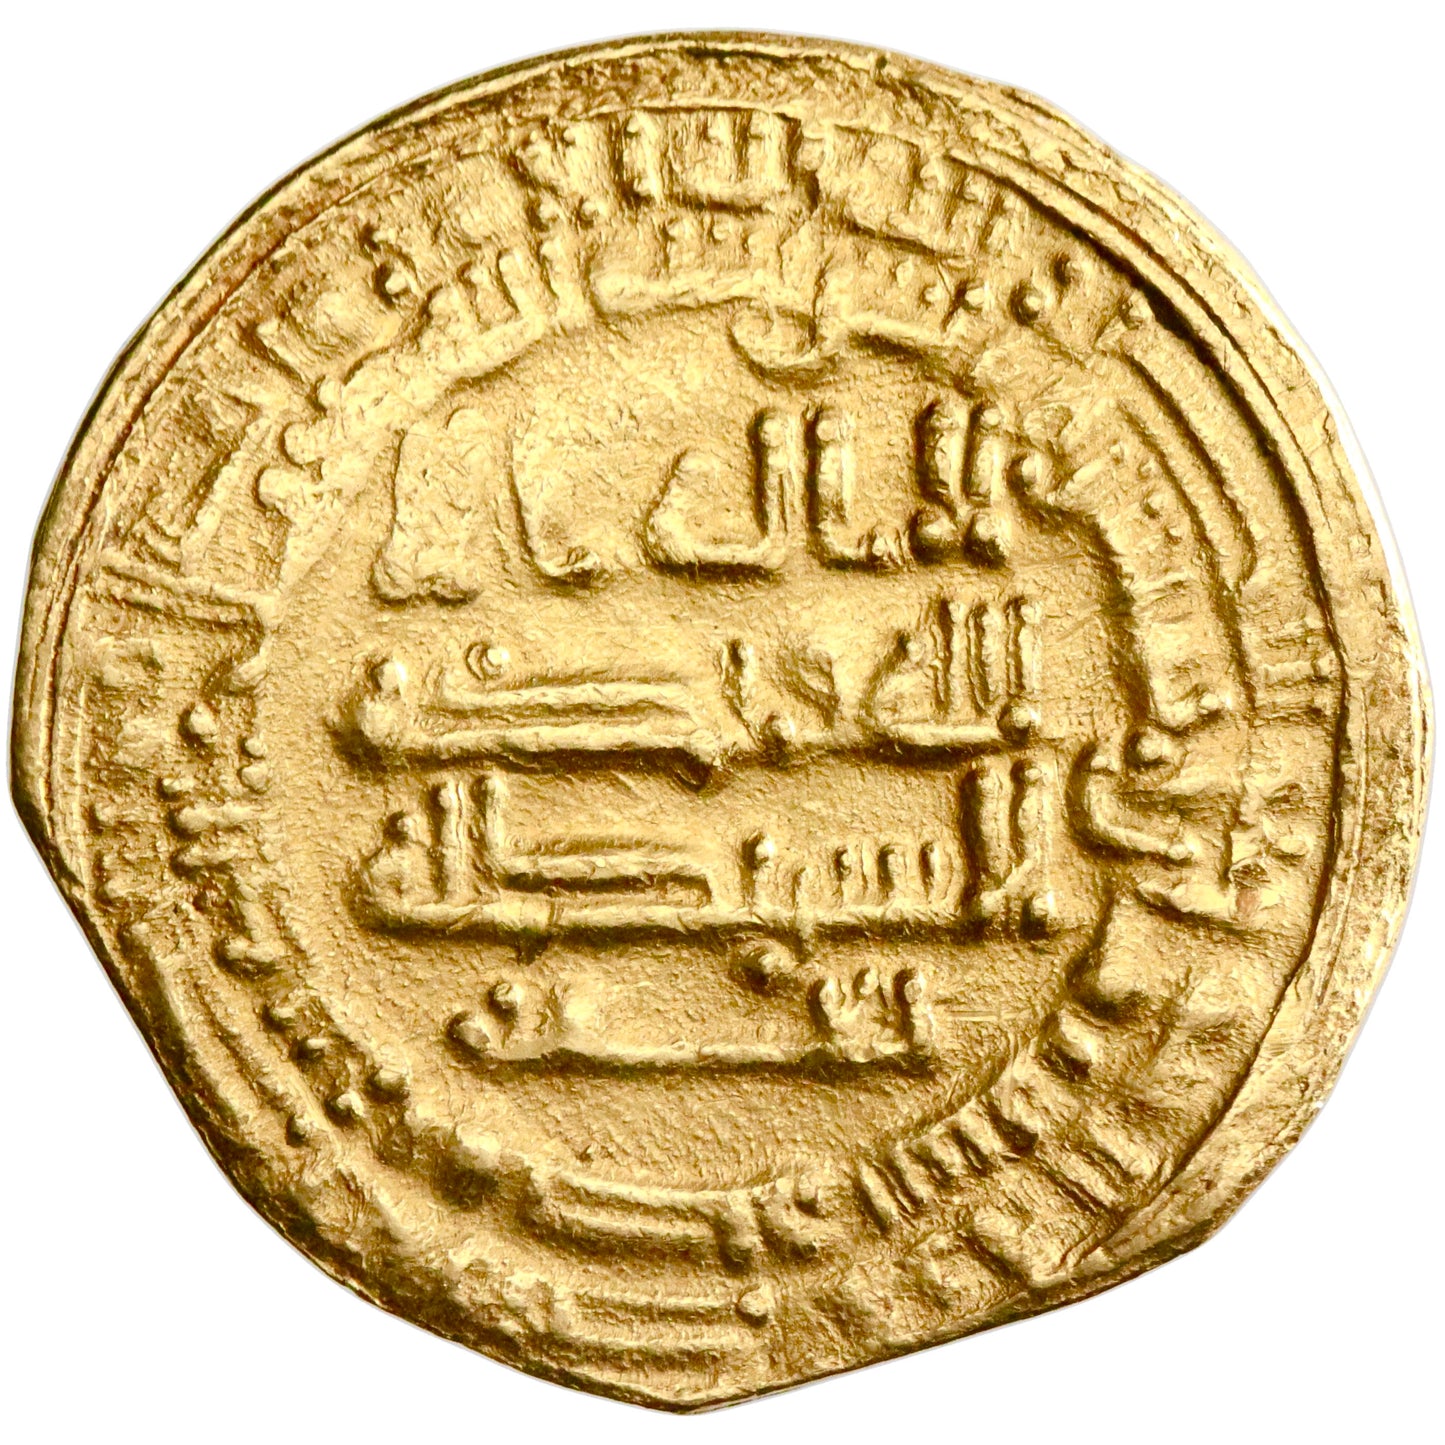 Abbasid, al-Mu'tamid, gold dinar, Misr (Egypt) mint, AH 258, citing Nahrir and Ja'far